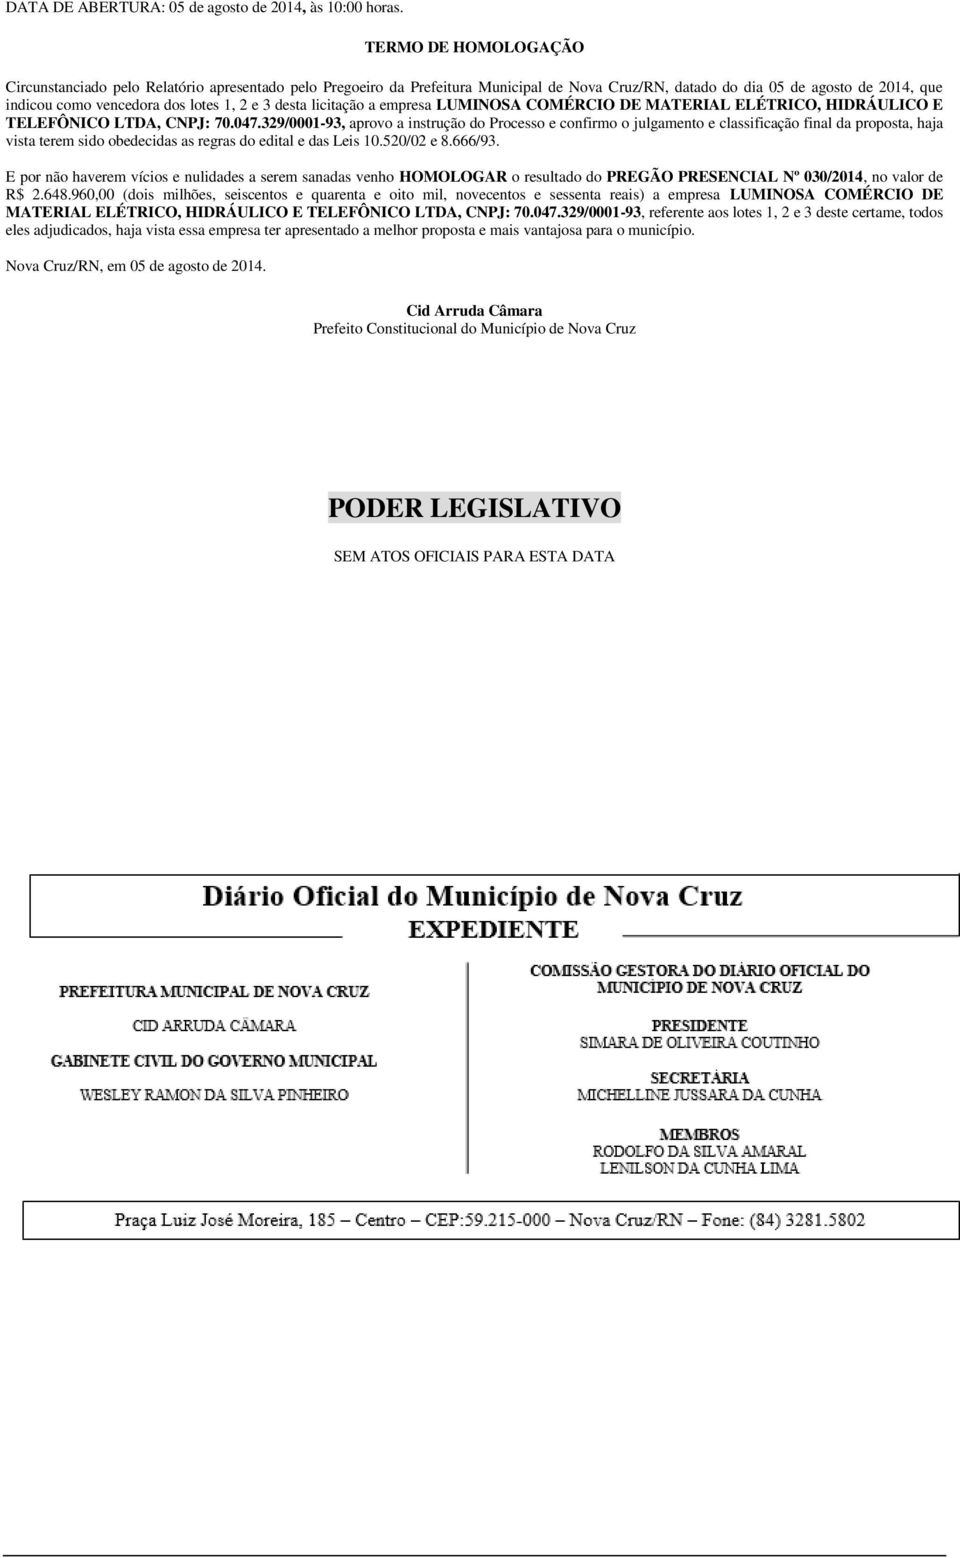 3 desta licitação a empresa LUMINOSA COMÉRCIO DE MATERIAL ELÉTRICO, HIDRÁULICO E TELEFÔNICO LTDA, CNPJ: 70.047.